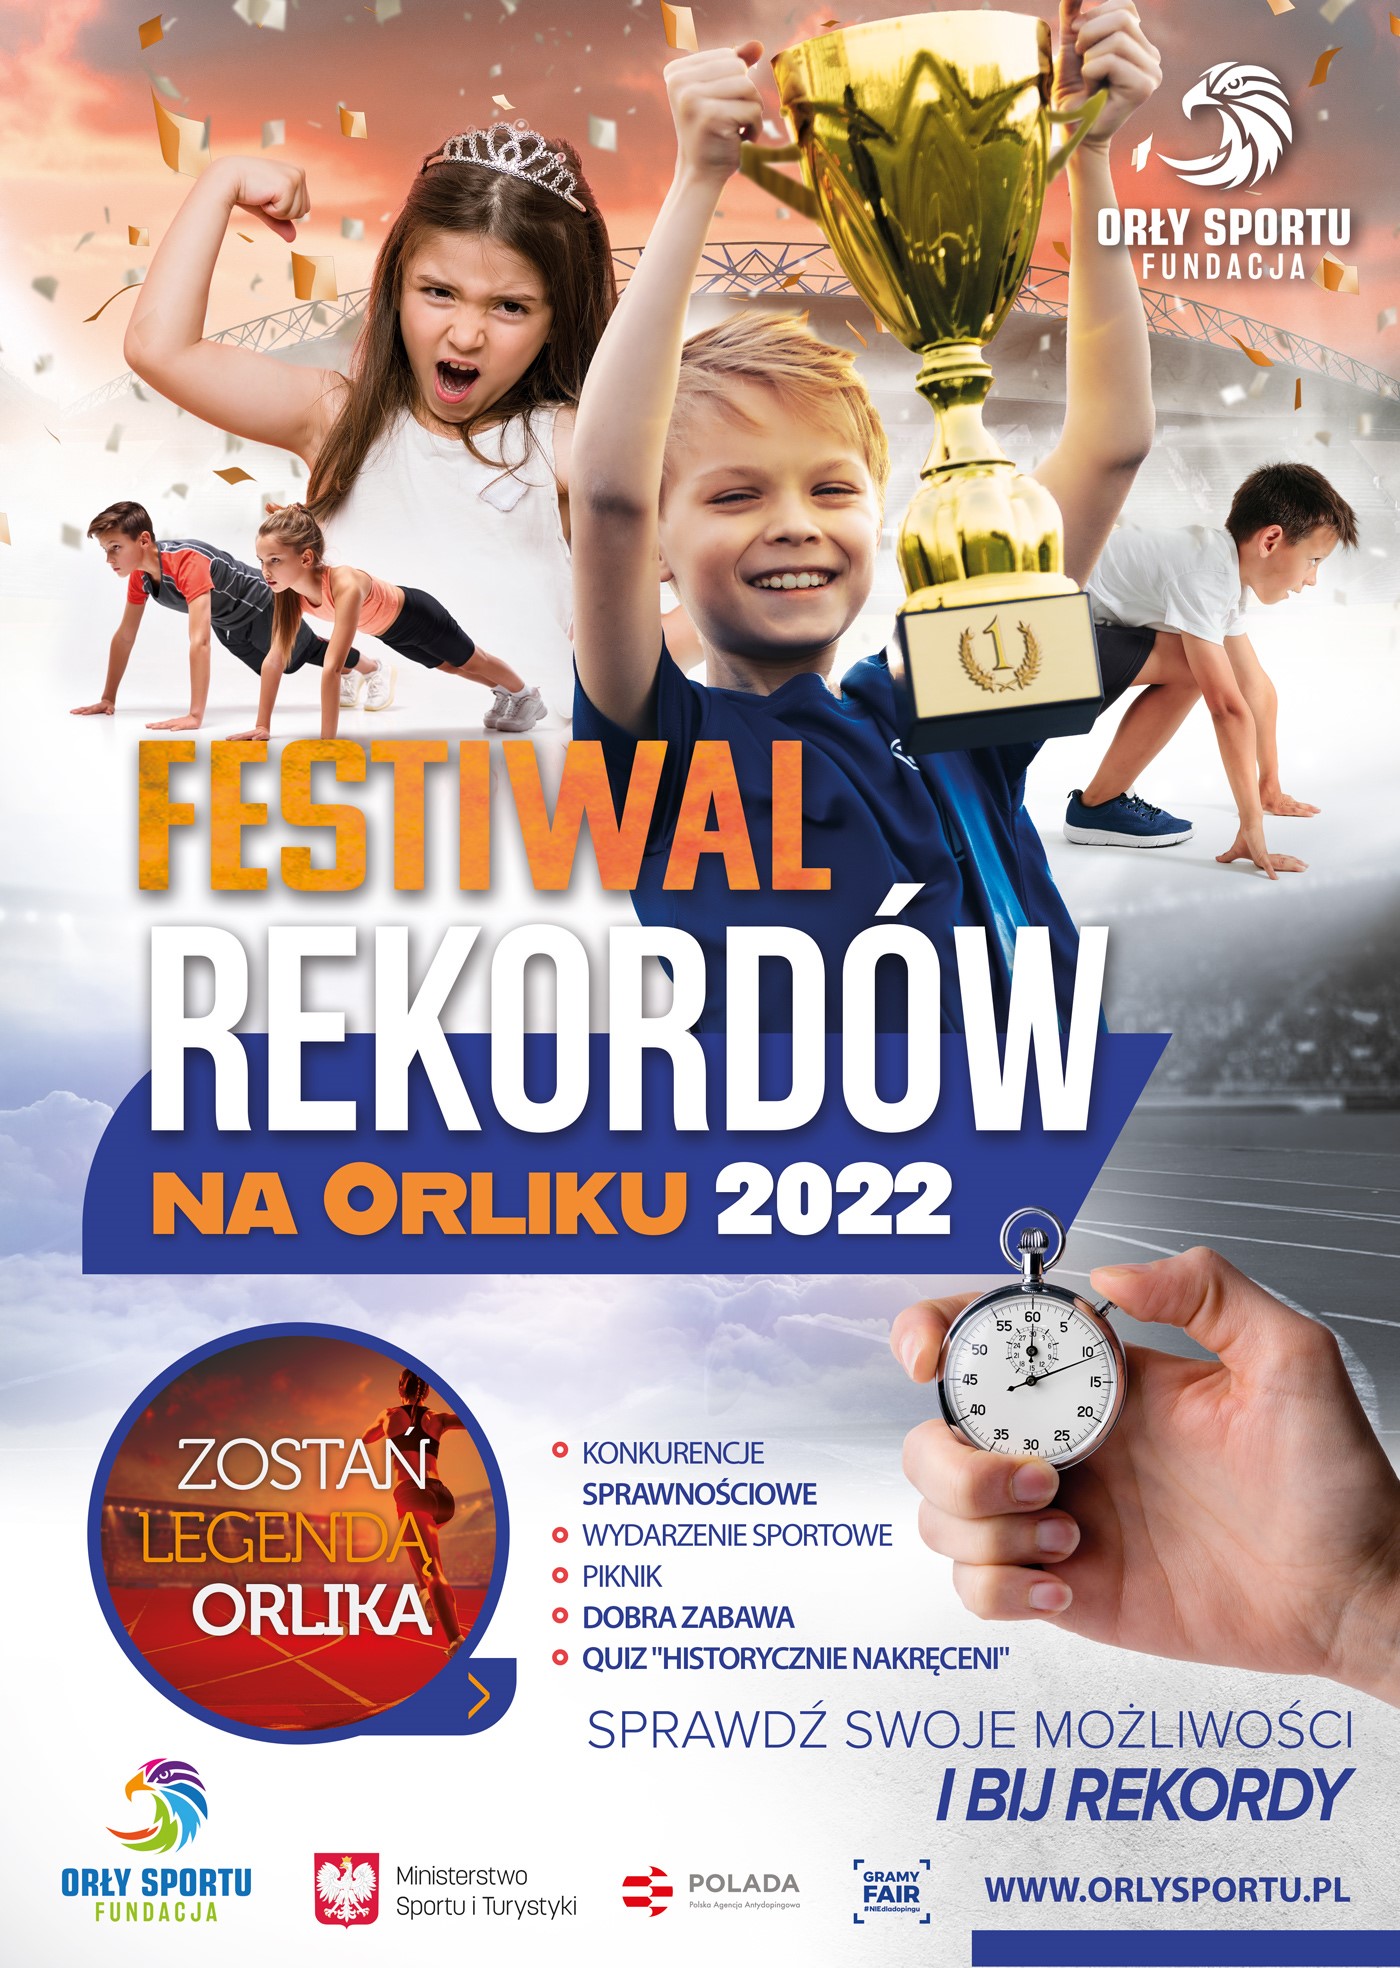 Festiwal Rekordów na Orliku 2022